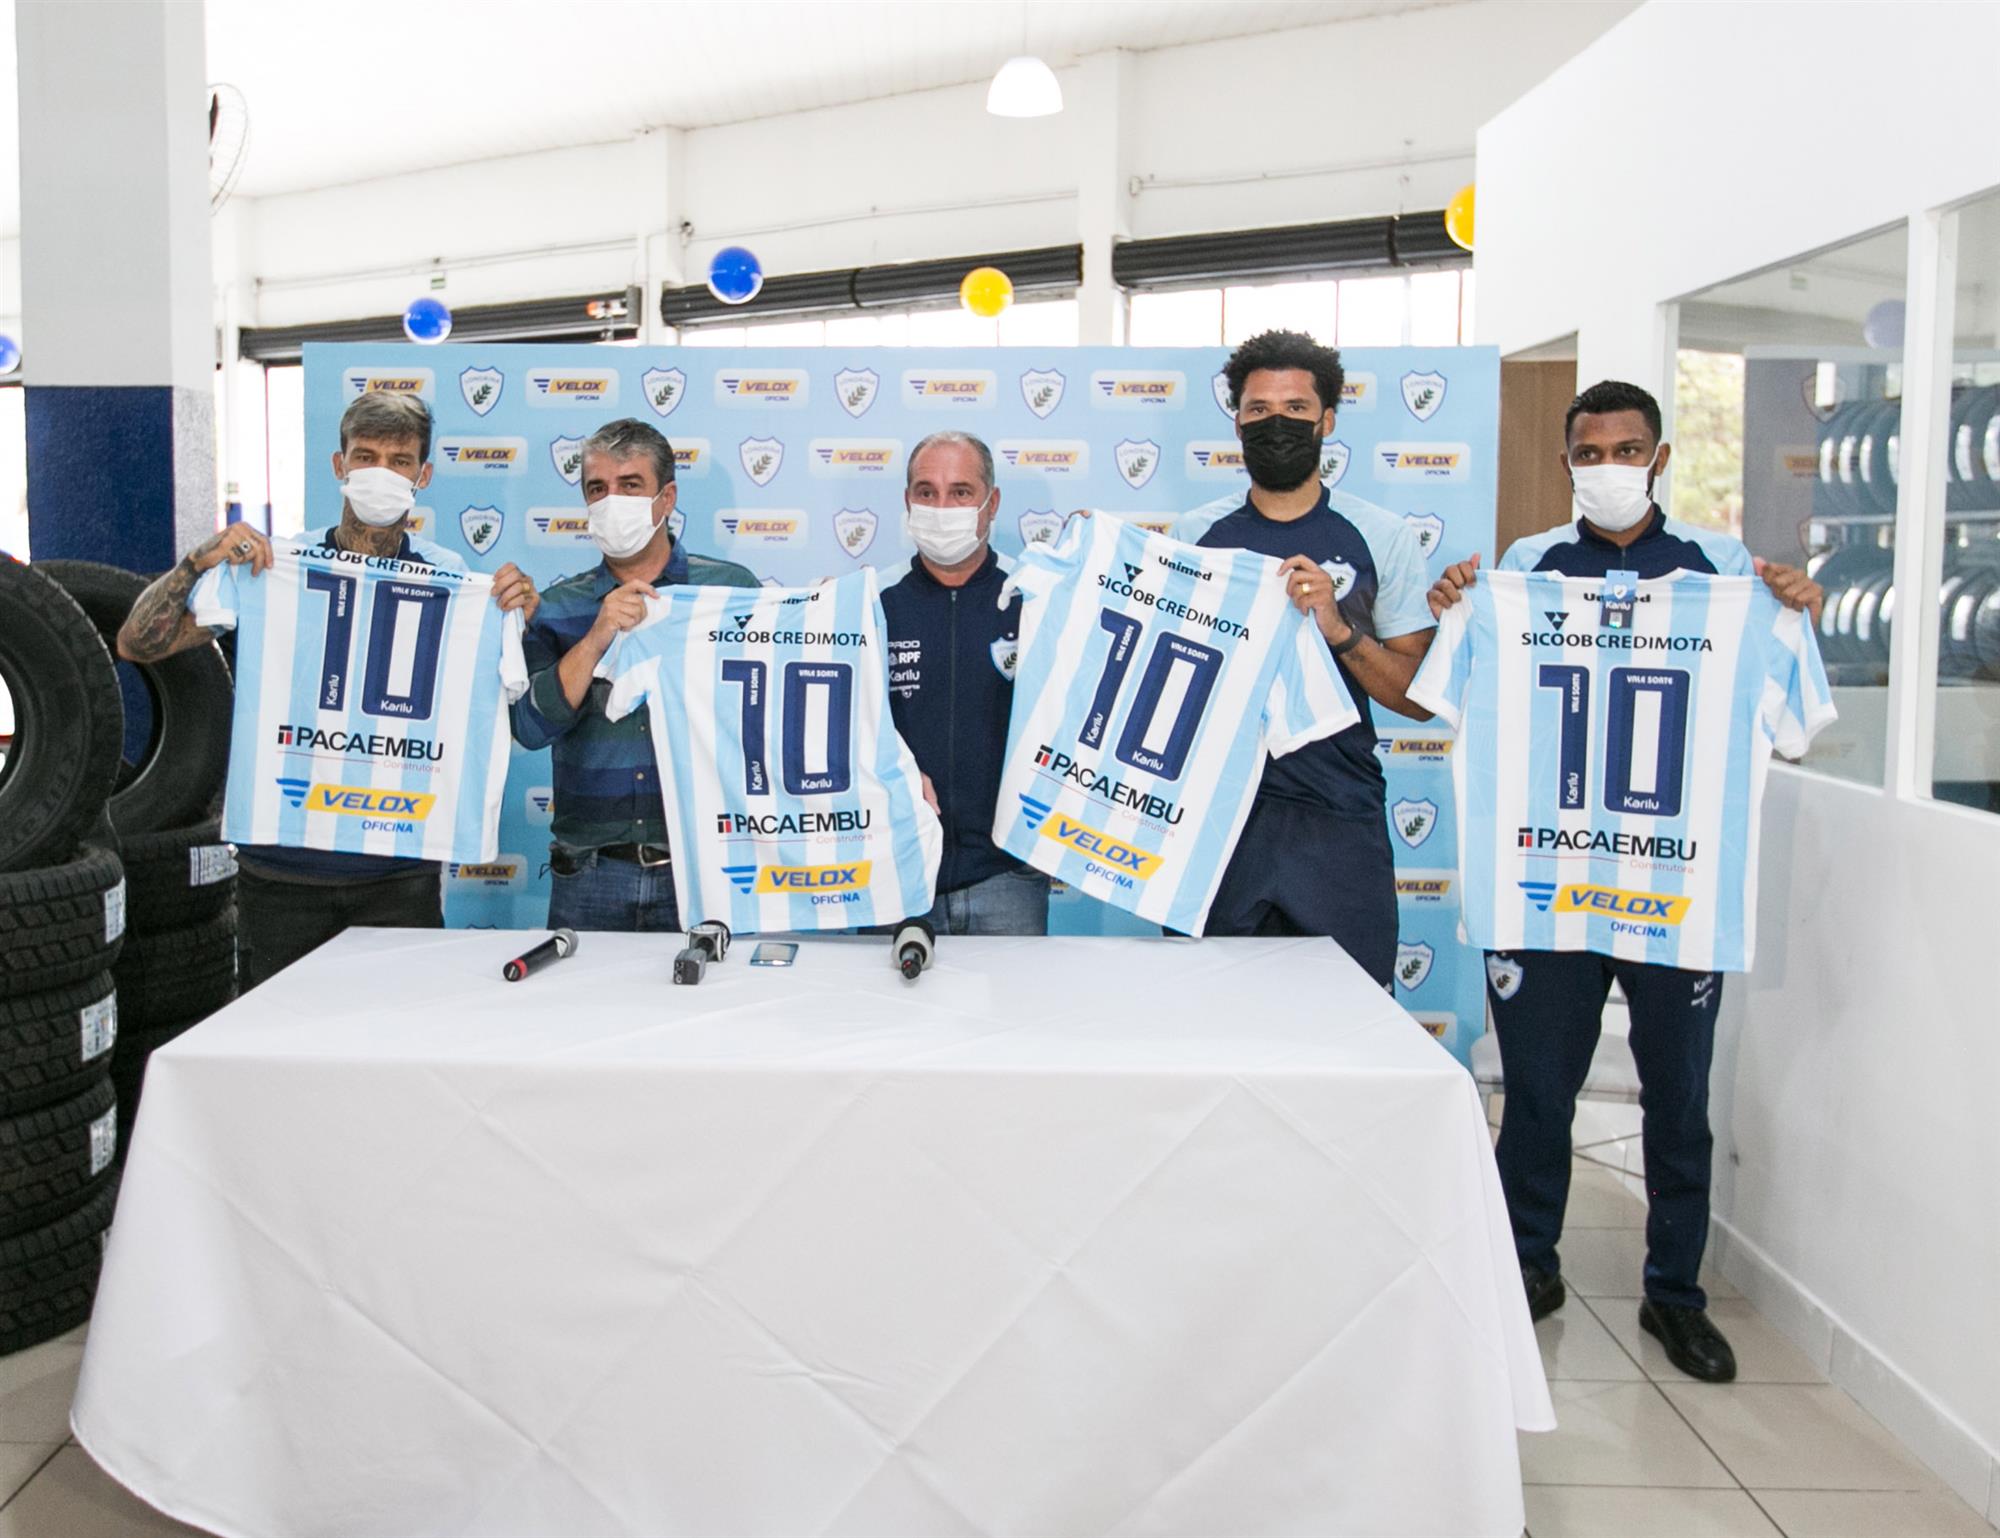 Londrina oficializa a Velox Oficina como novo patrocinador